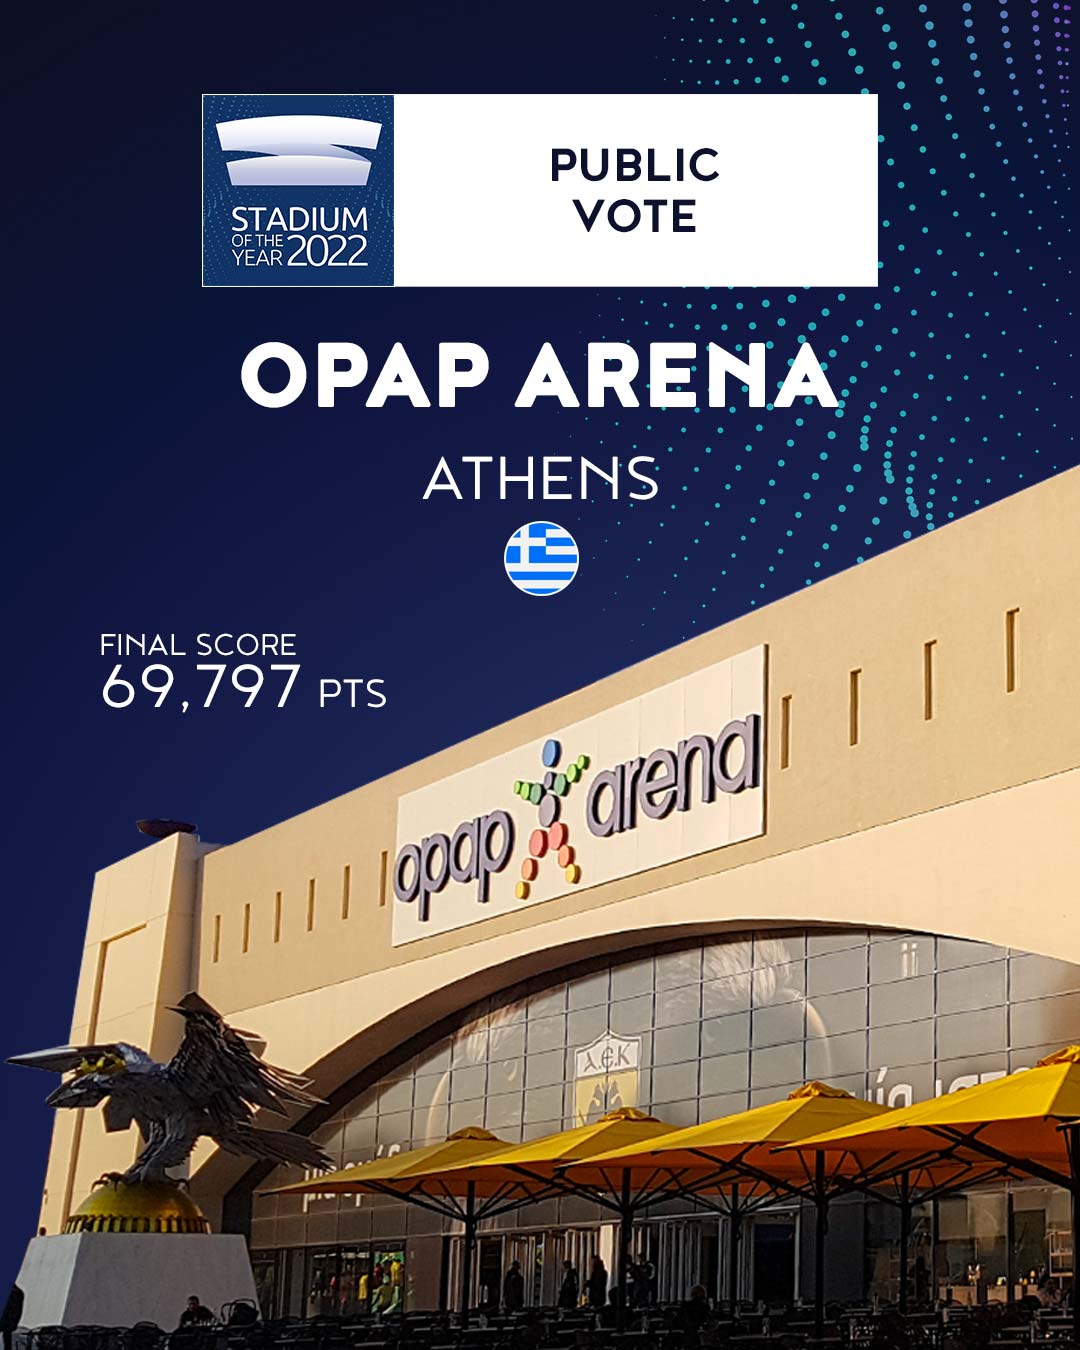 OPAP Arena - winner of Stadium of the Year 2022